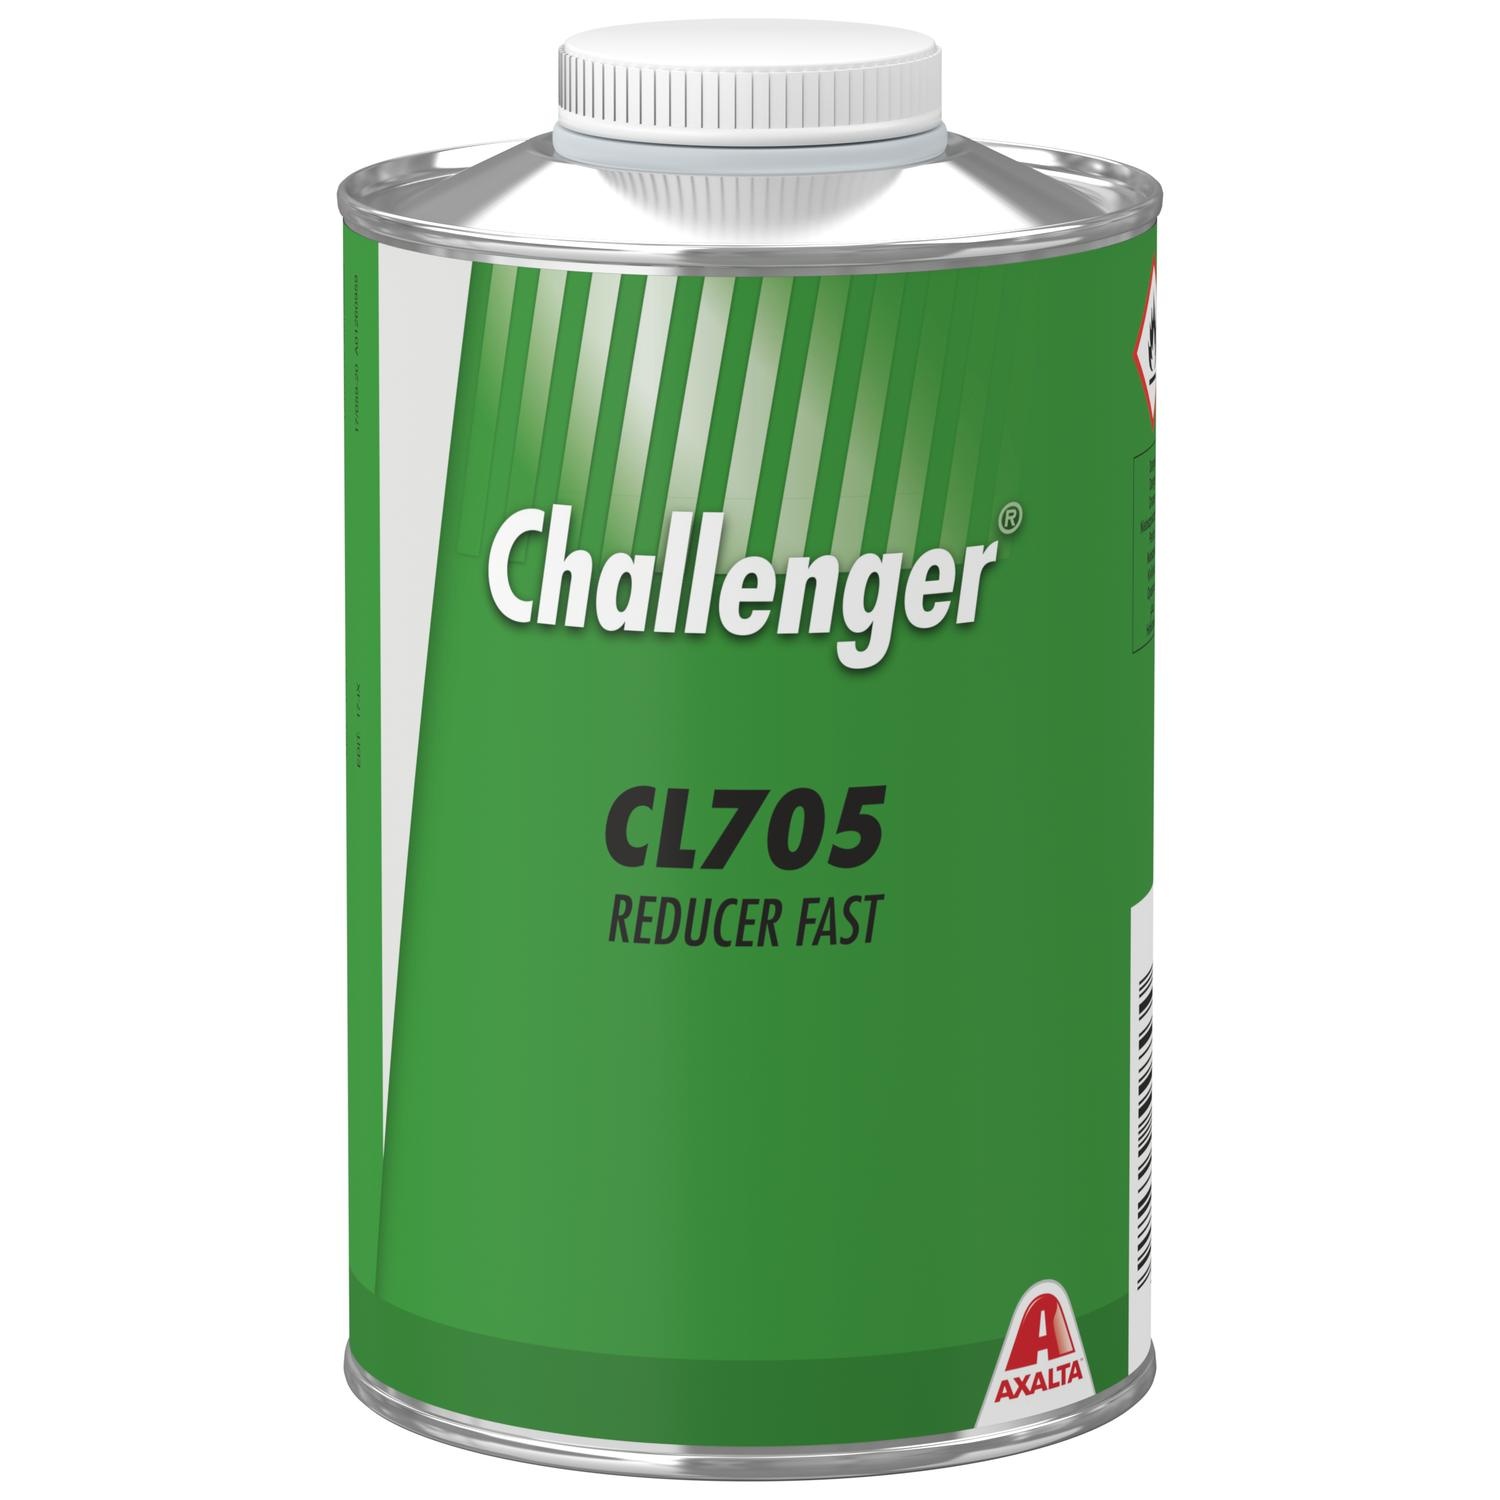 Купить CL 705 Разбавитель быстрый Challenger 1л